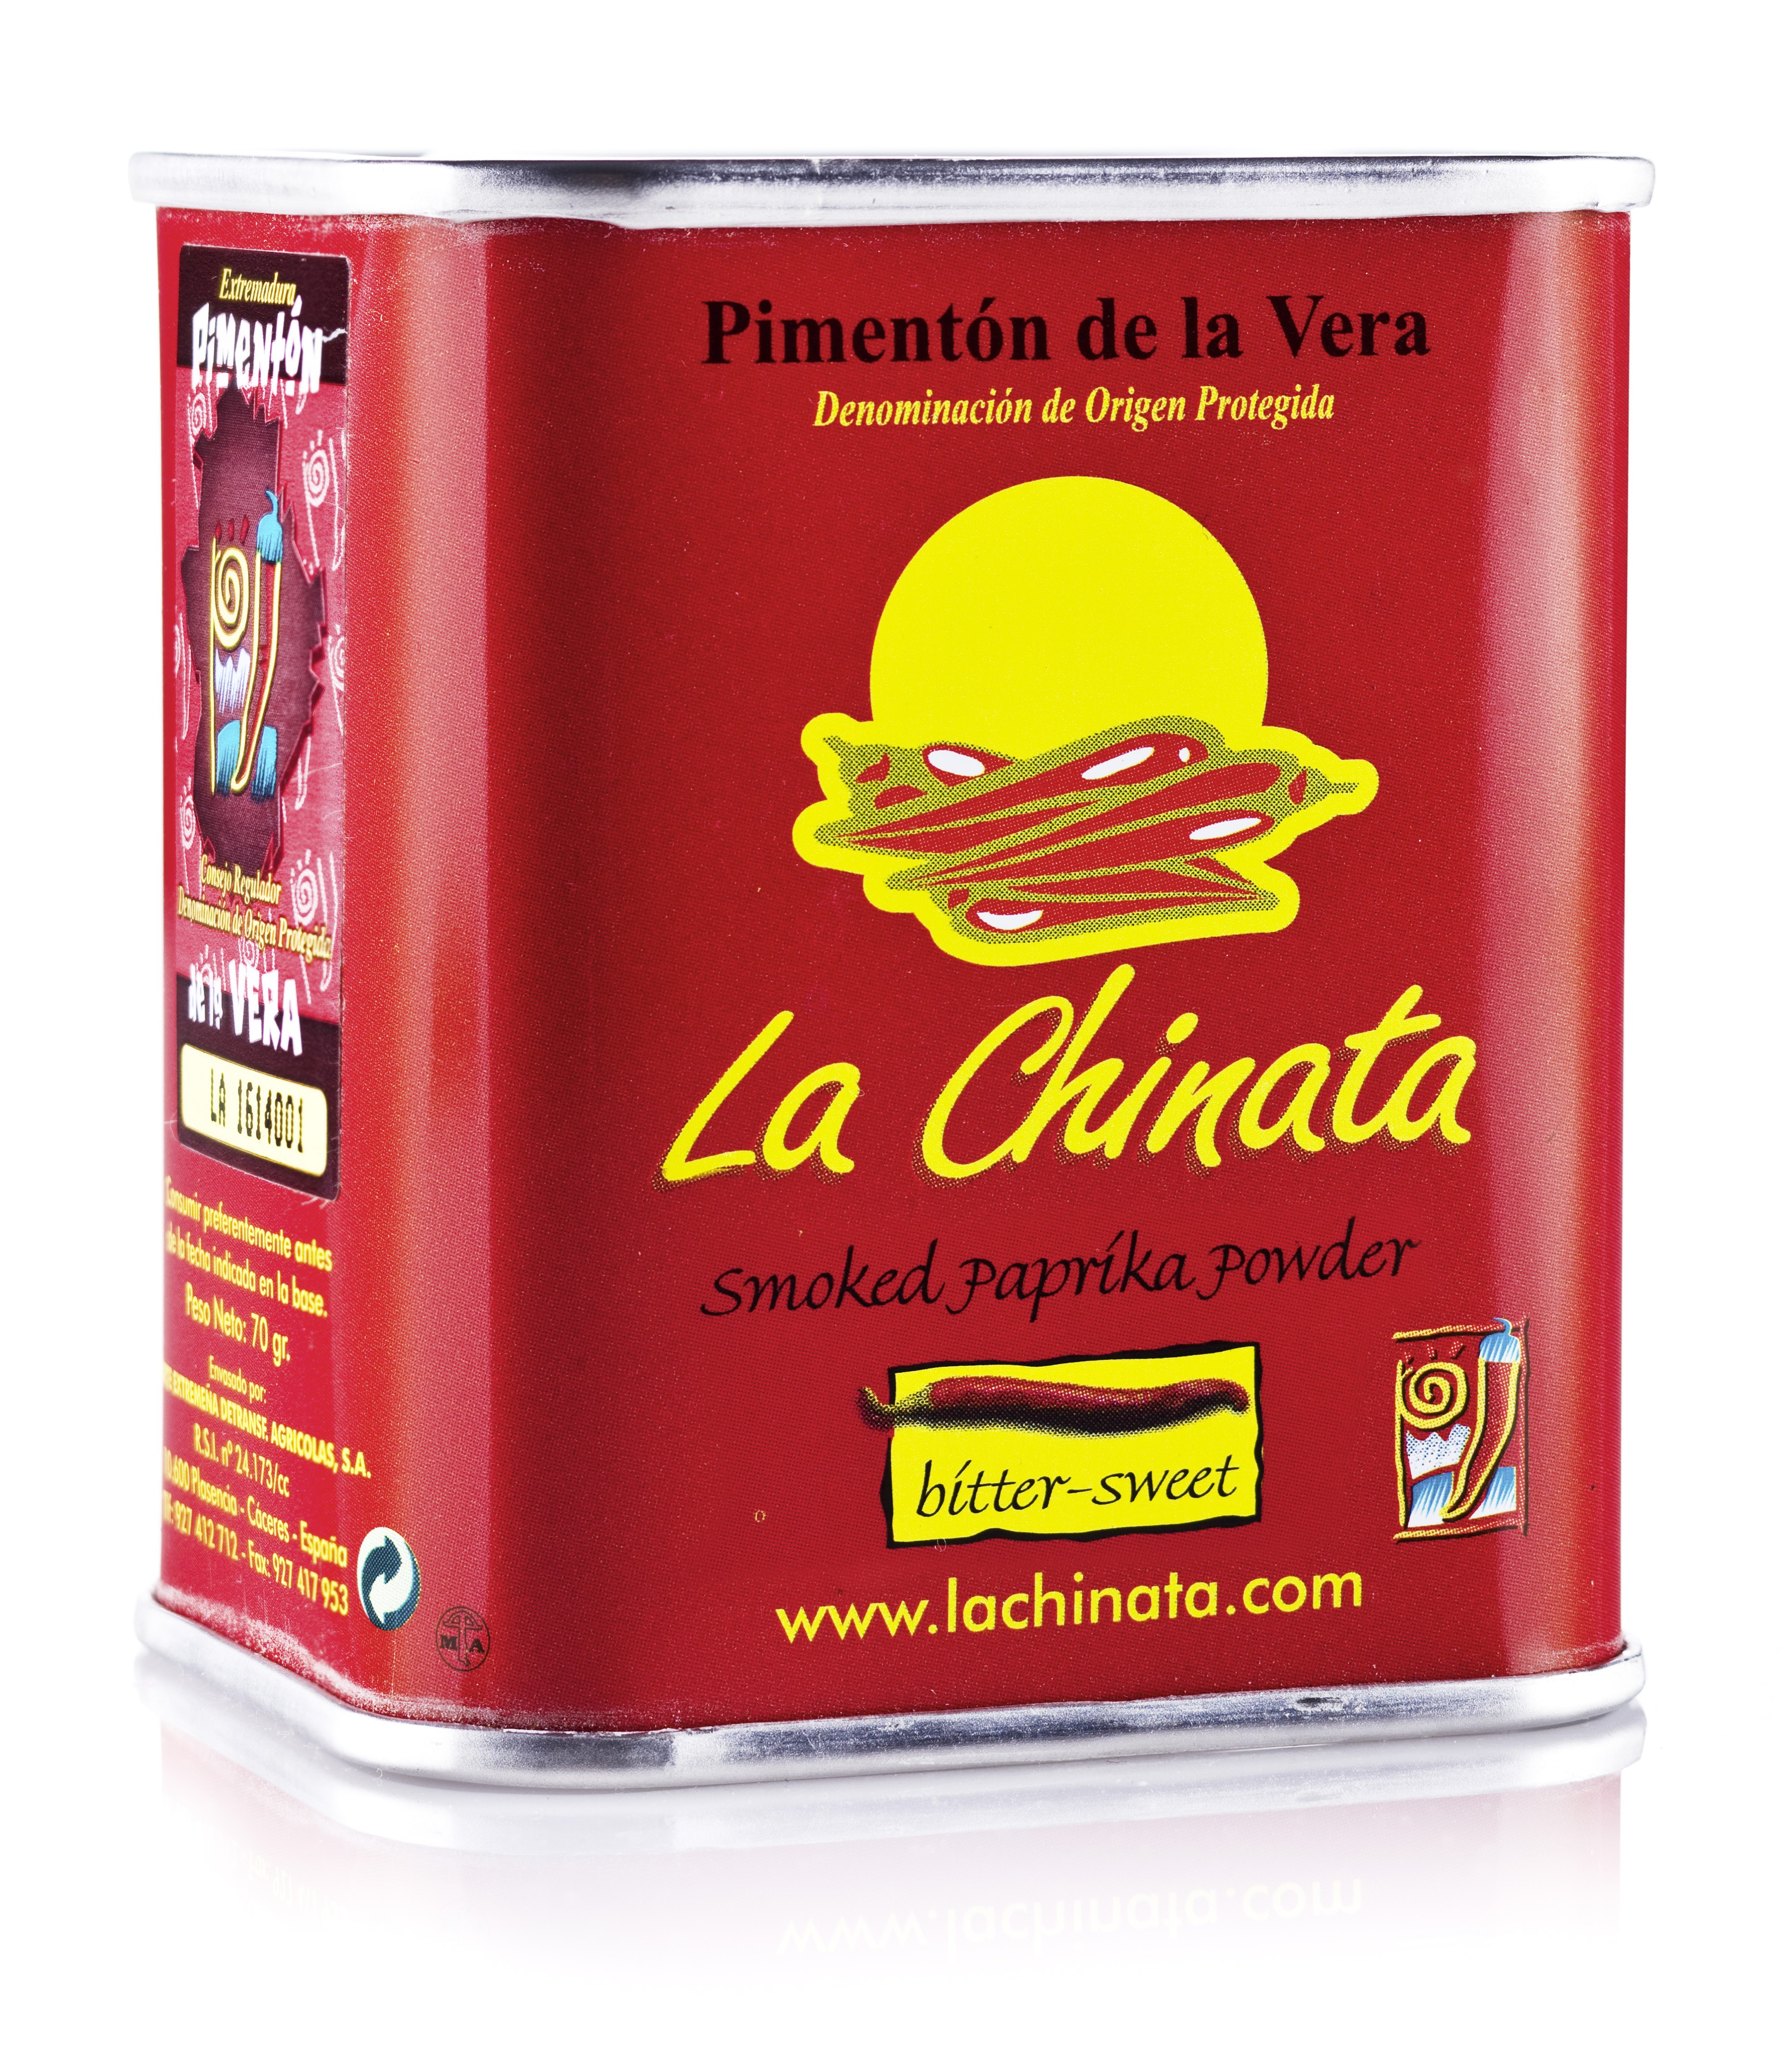 La Chinata Bittersweet Smoked Paprika Powder 70g Tin